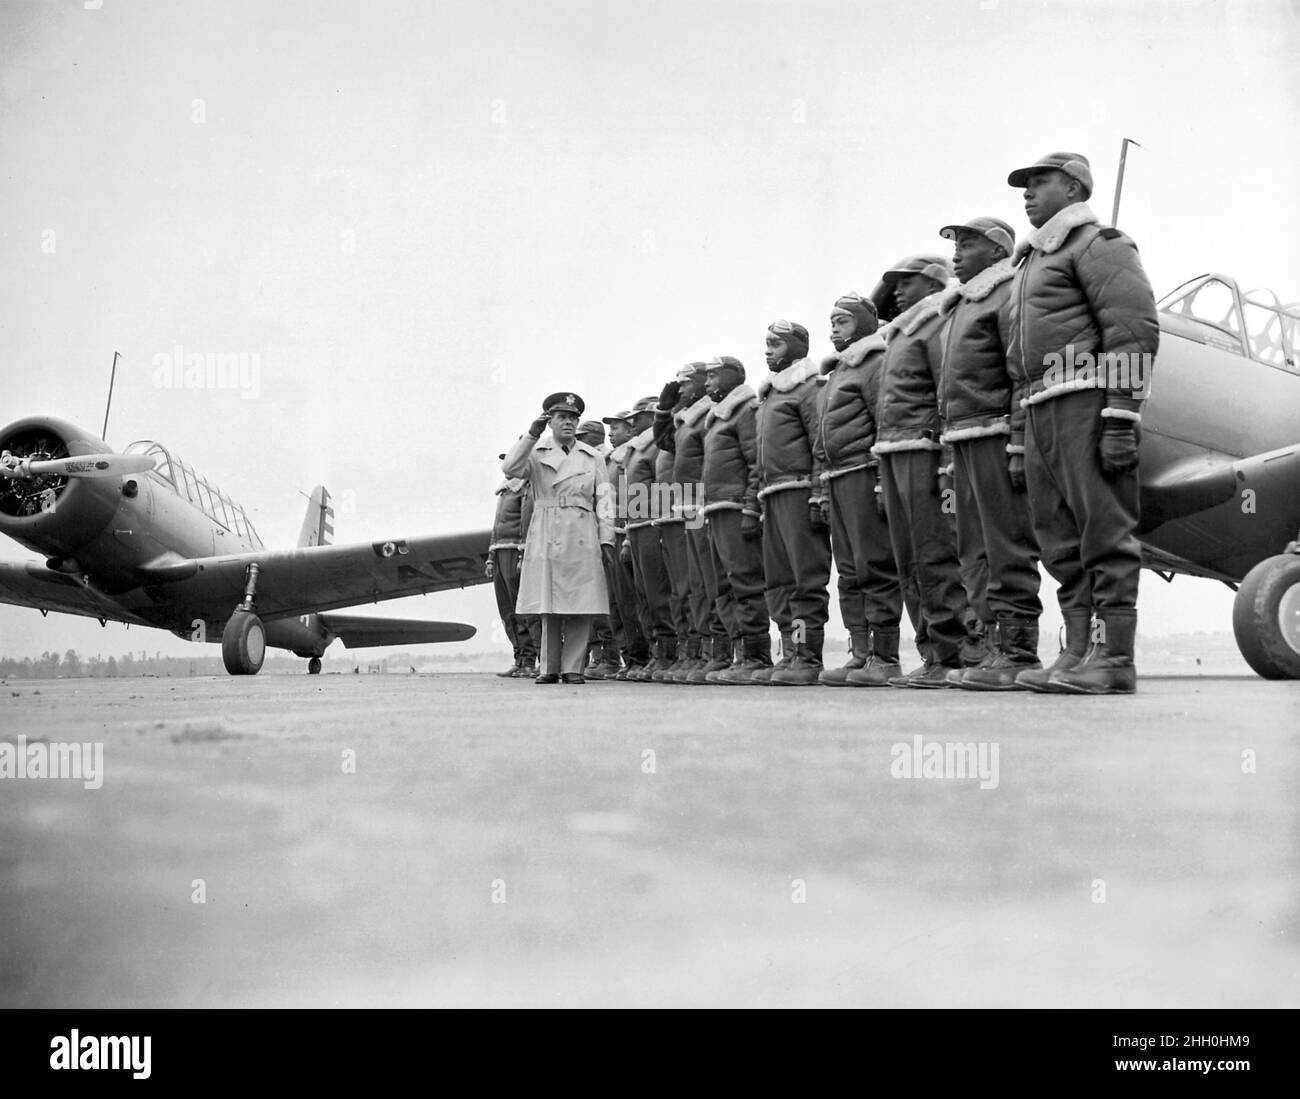 Il maggiore James A. Ellison restituisce il saluto di Mac Ross, mentre recensisce la prima classe di cadetti Tuskegee; alla base del corpo aereo dell'esercito degli Stati Uniti e scuola di volo avanzata, con gli addestratori di Vultee BT-13 nello sfondo, Tuskegee, Alabama, 1941 Foto Stock